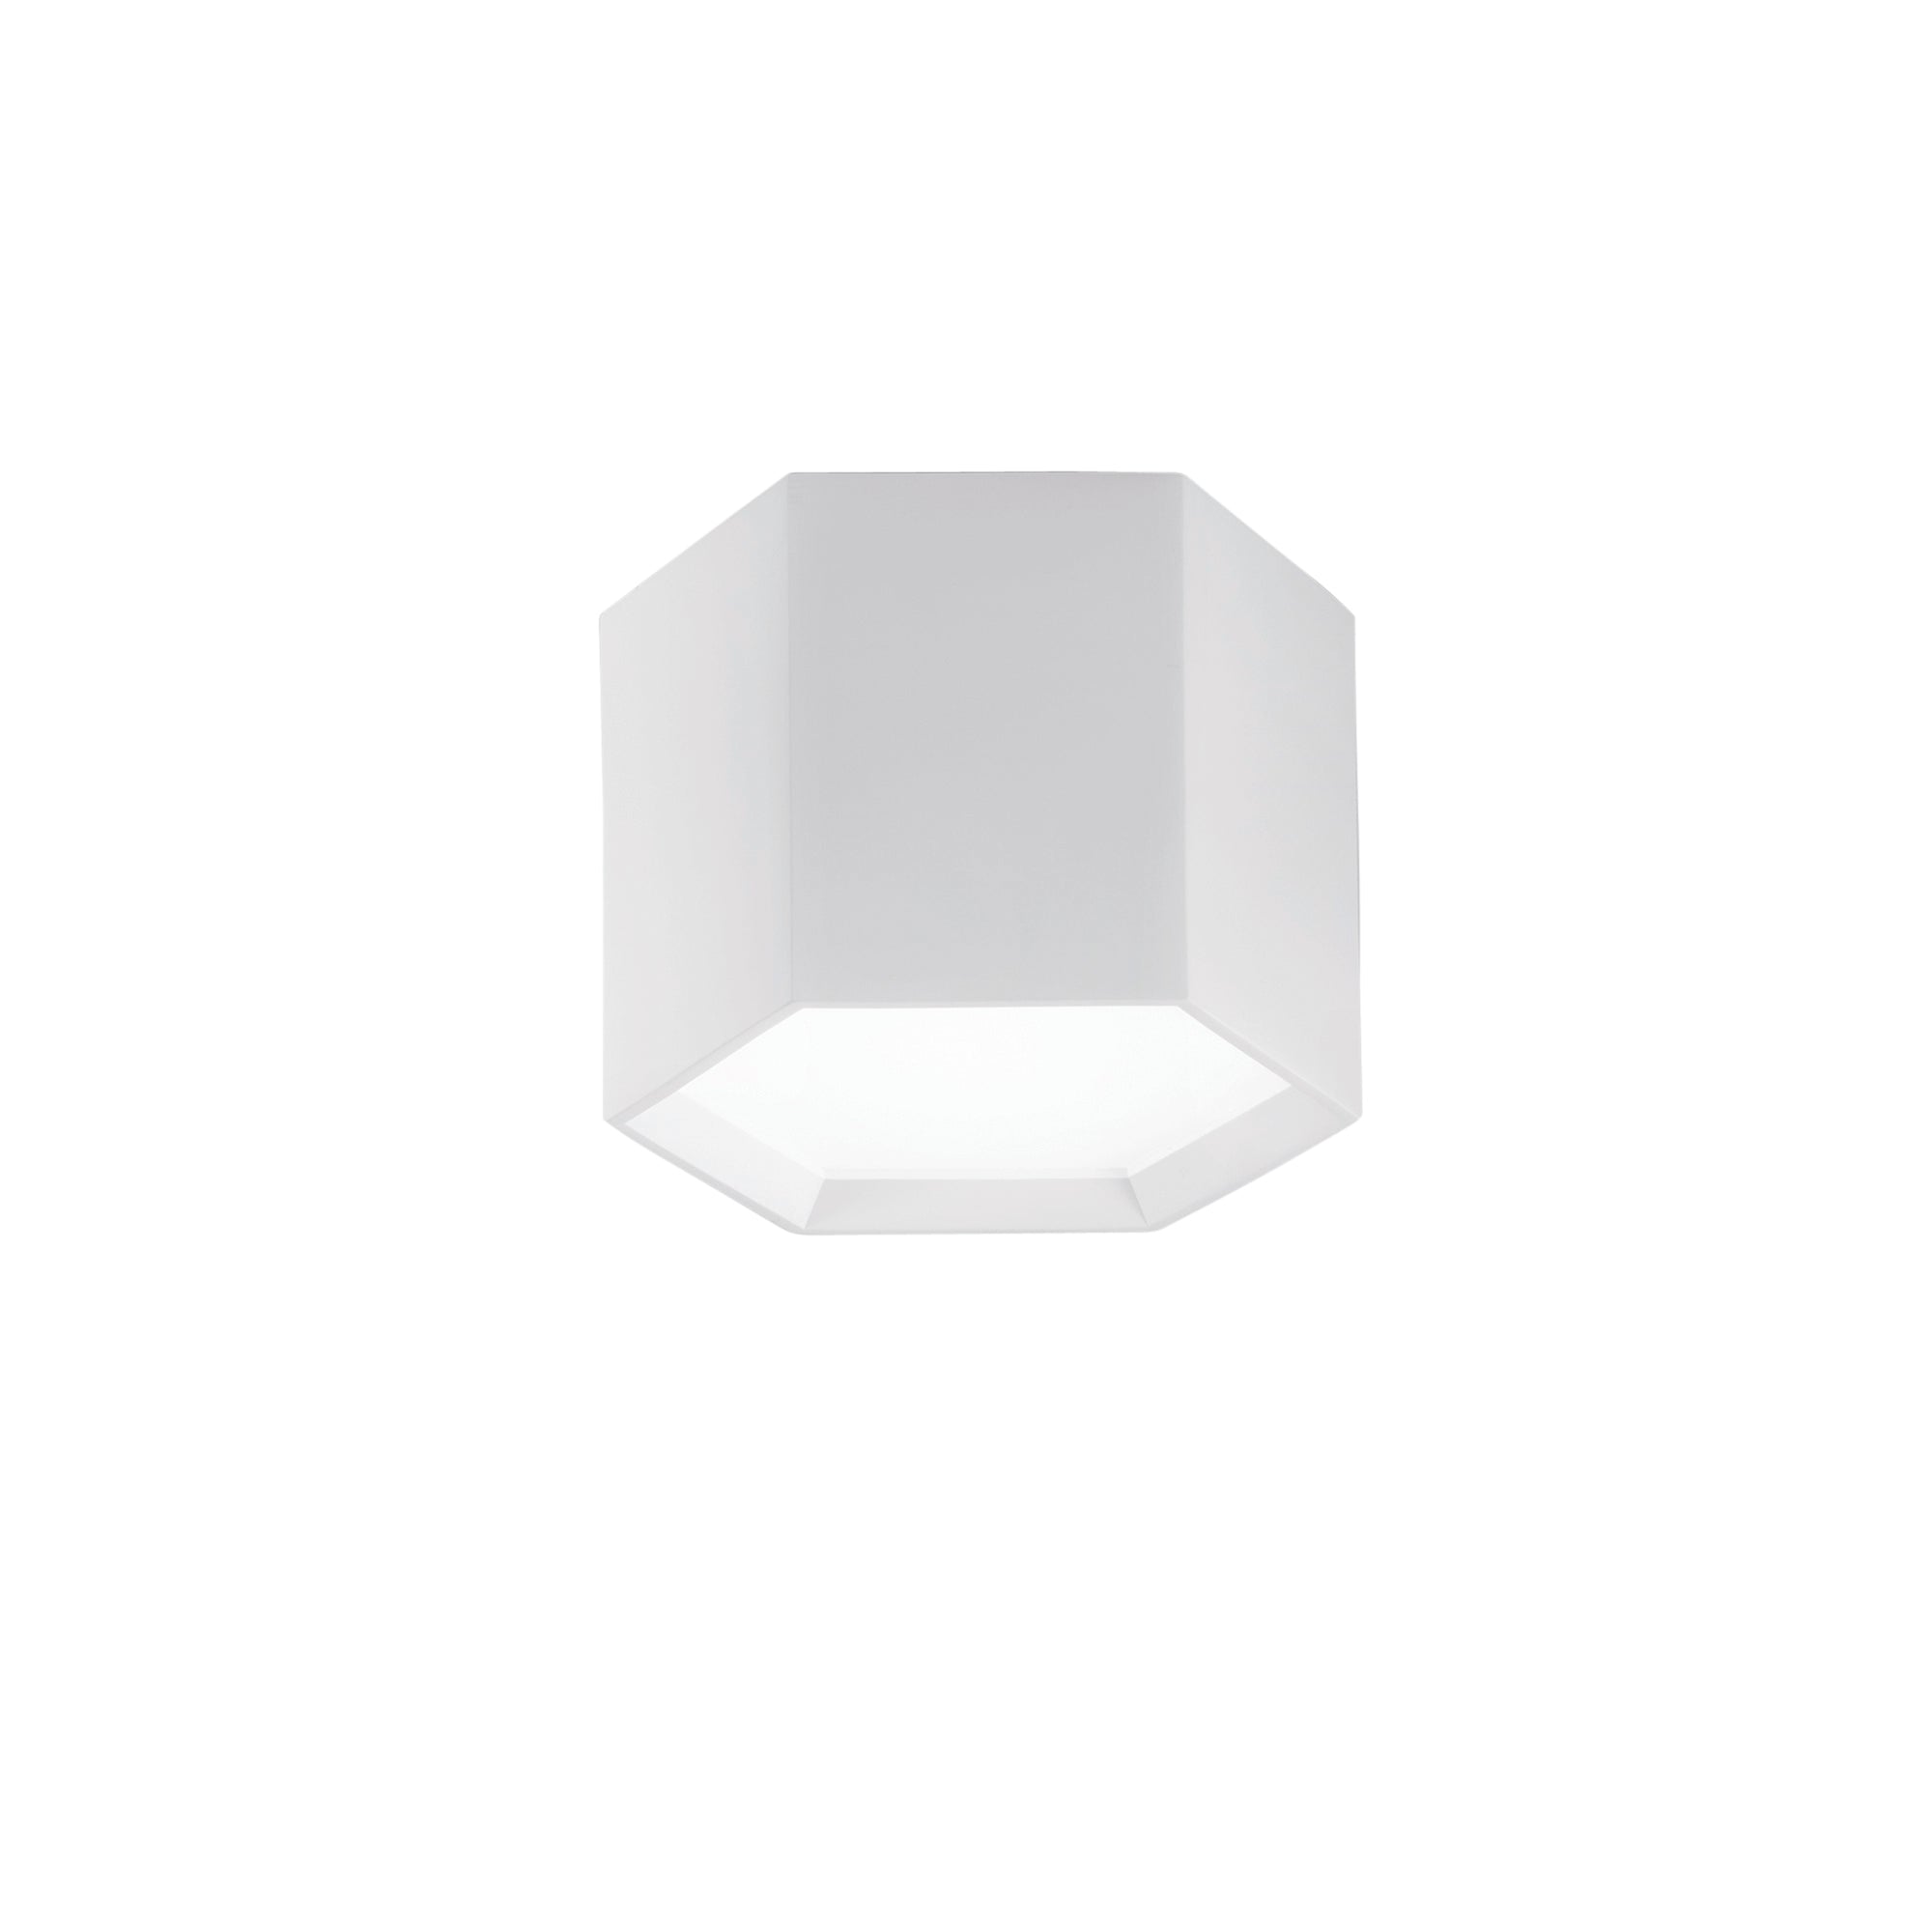 Plafoniera LED VORTEX componibile, verniciabile e interruttore interno per la regolazione dei kelvin